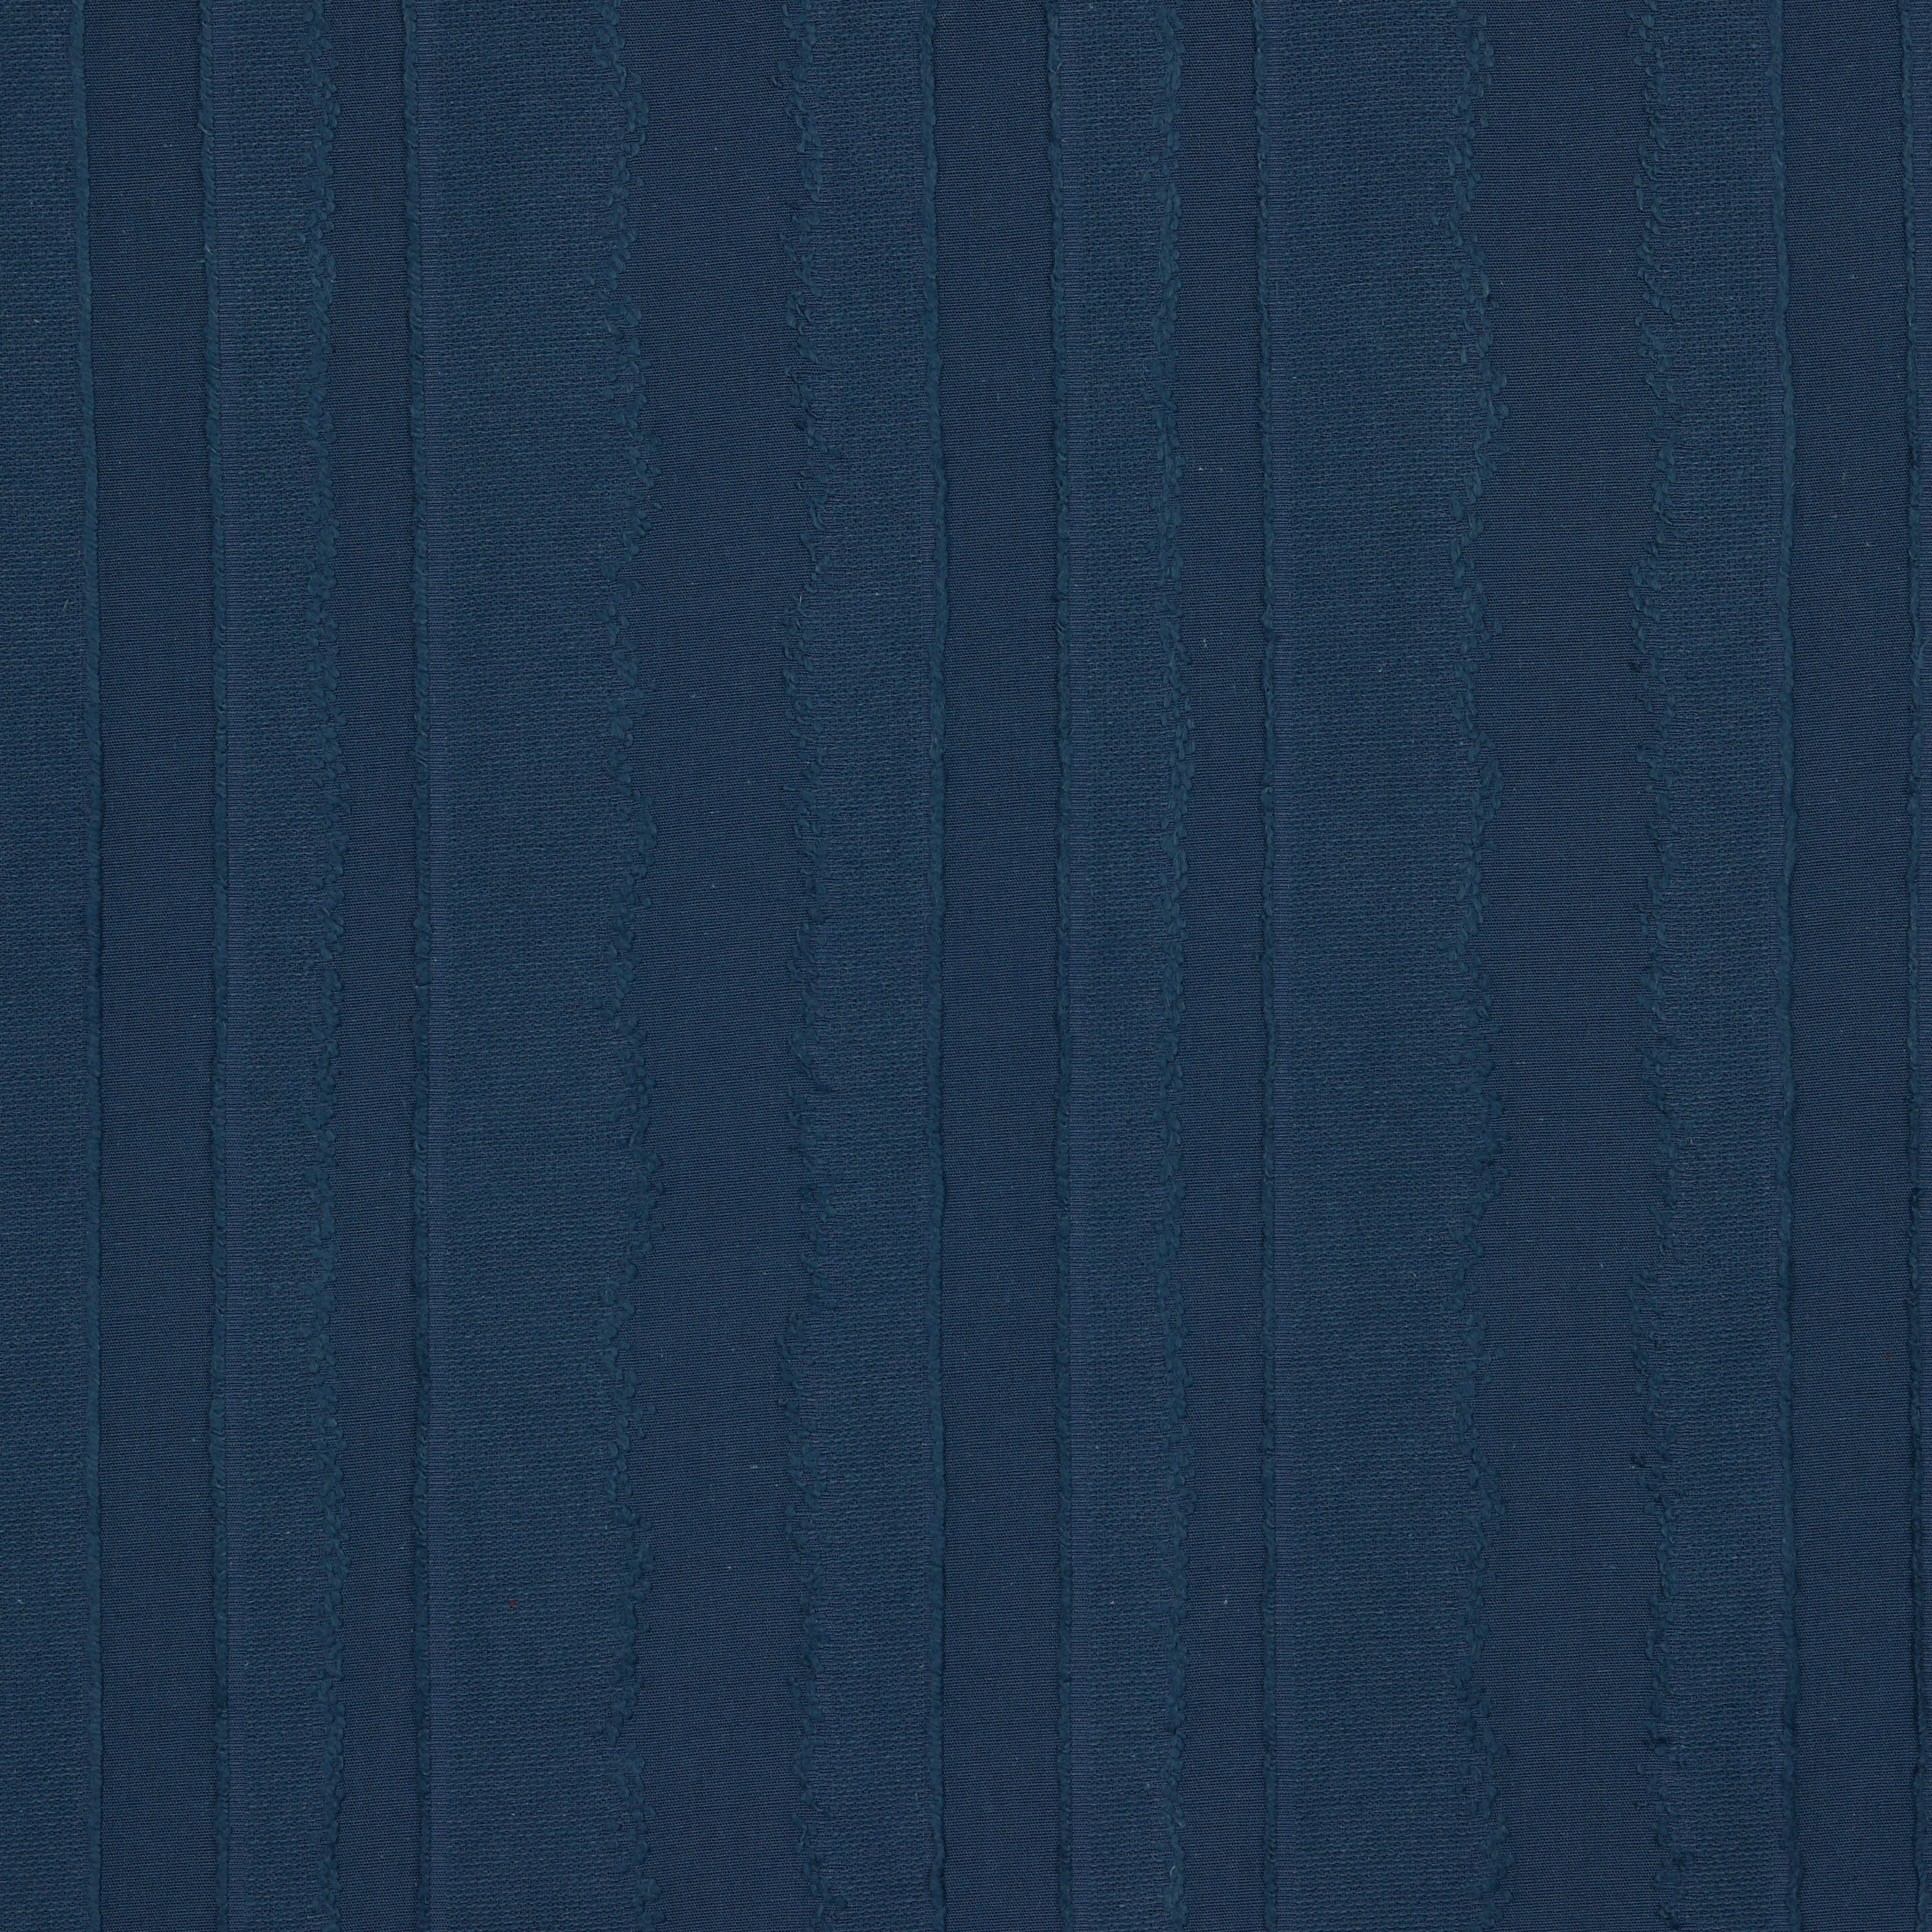 COTTON JACQUARD STRIPES INDIGO BLUE (high resolution)